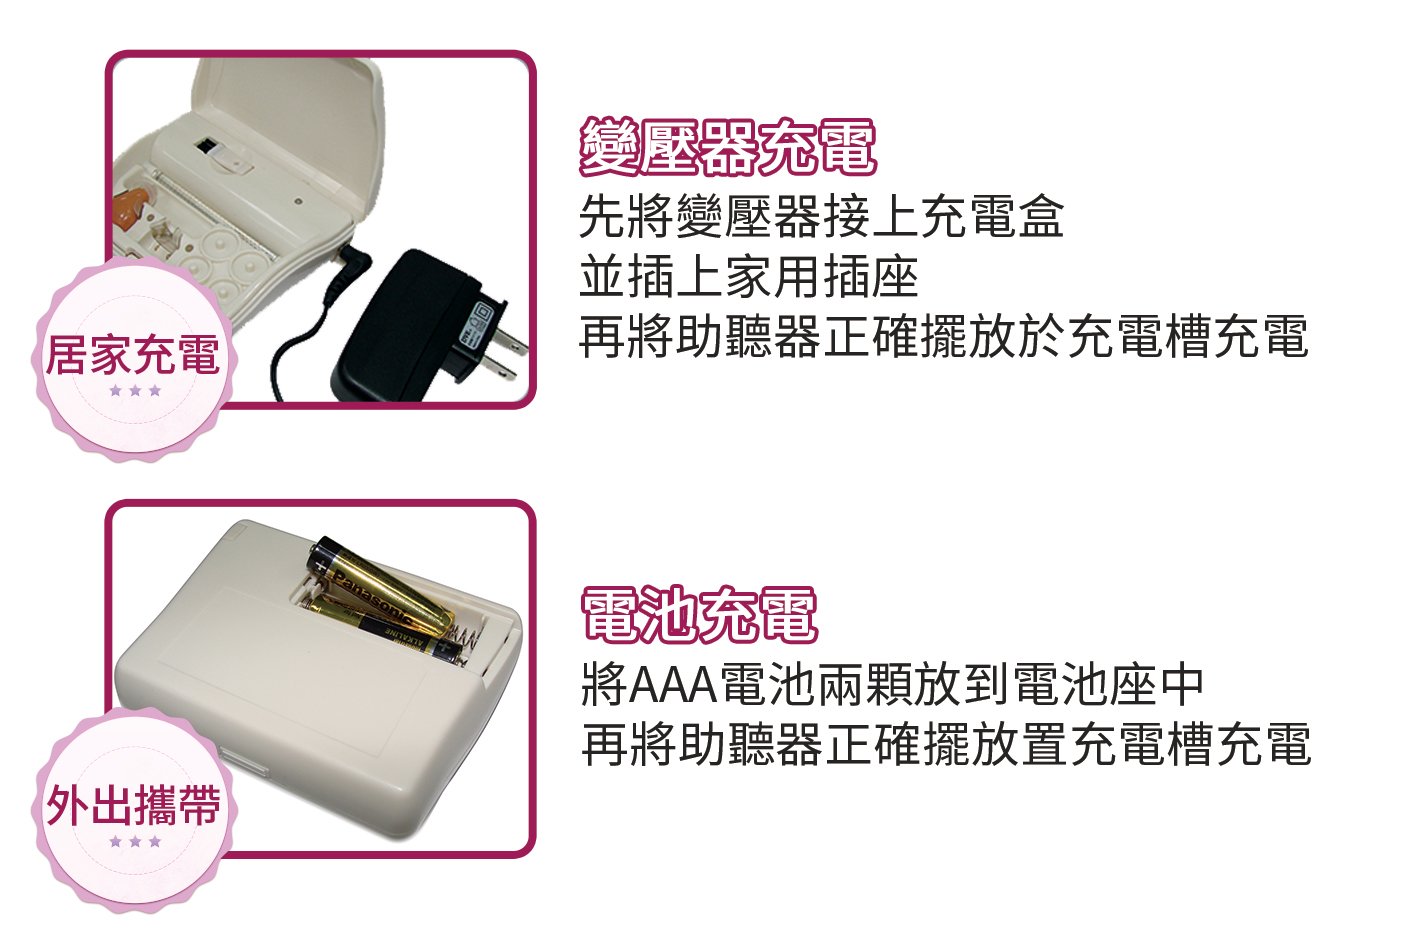 元健大和 ★ 日本耳寶 6SA2 充電式耳內型助聽器 充電說明1